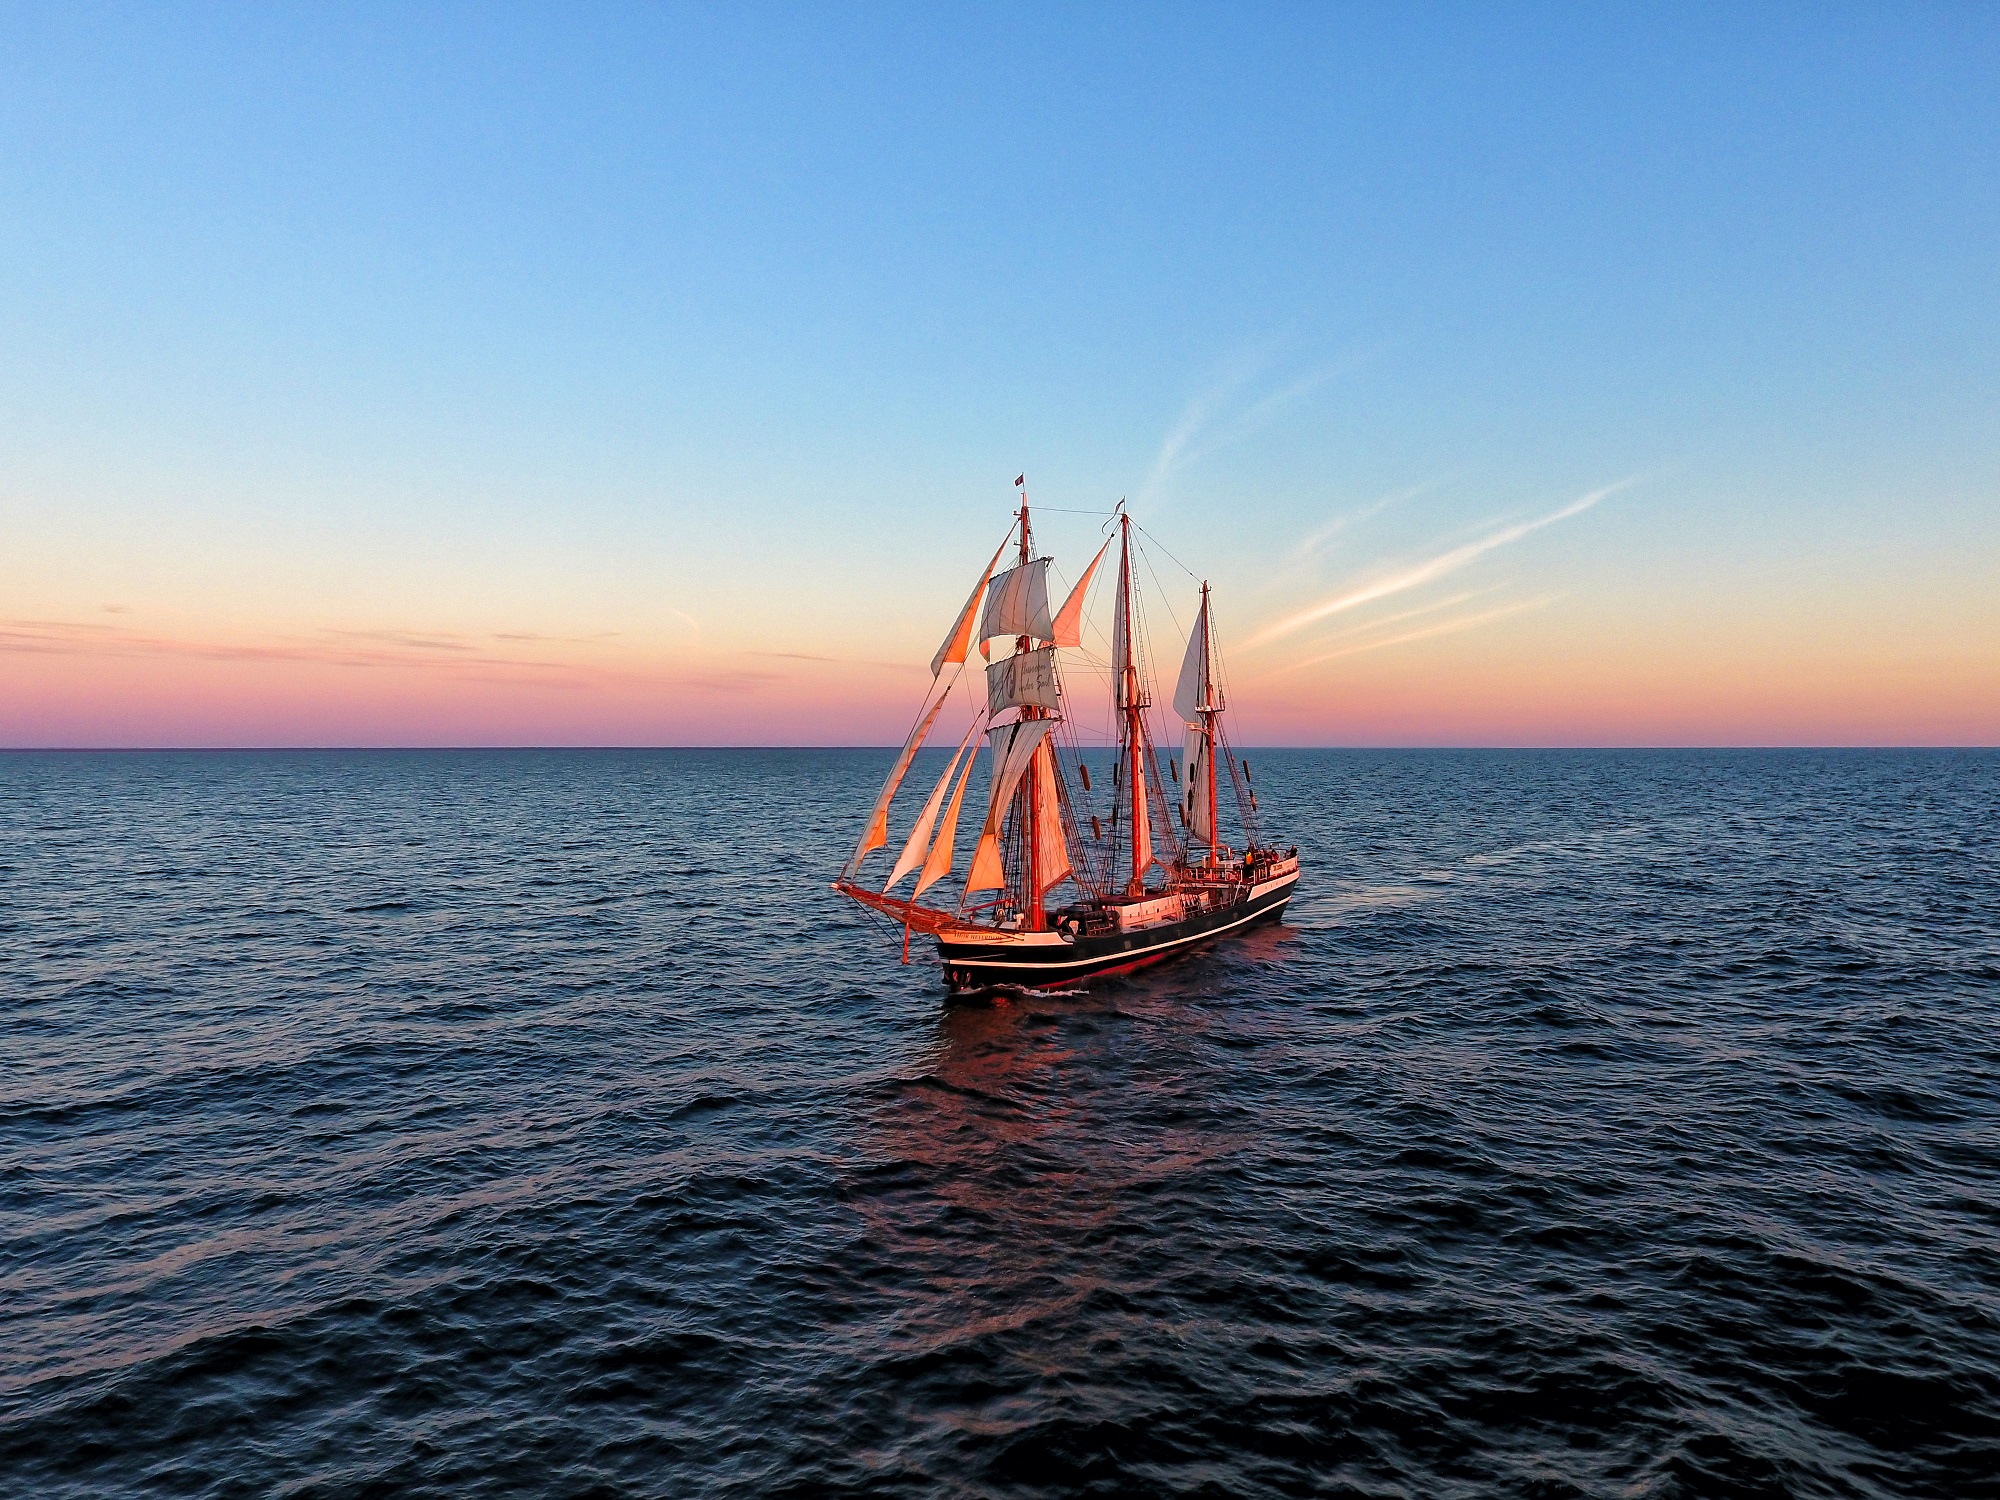 Traditionssegelschiff Thor Heyerdahl im Abendlicht